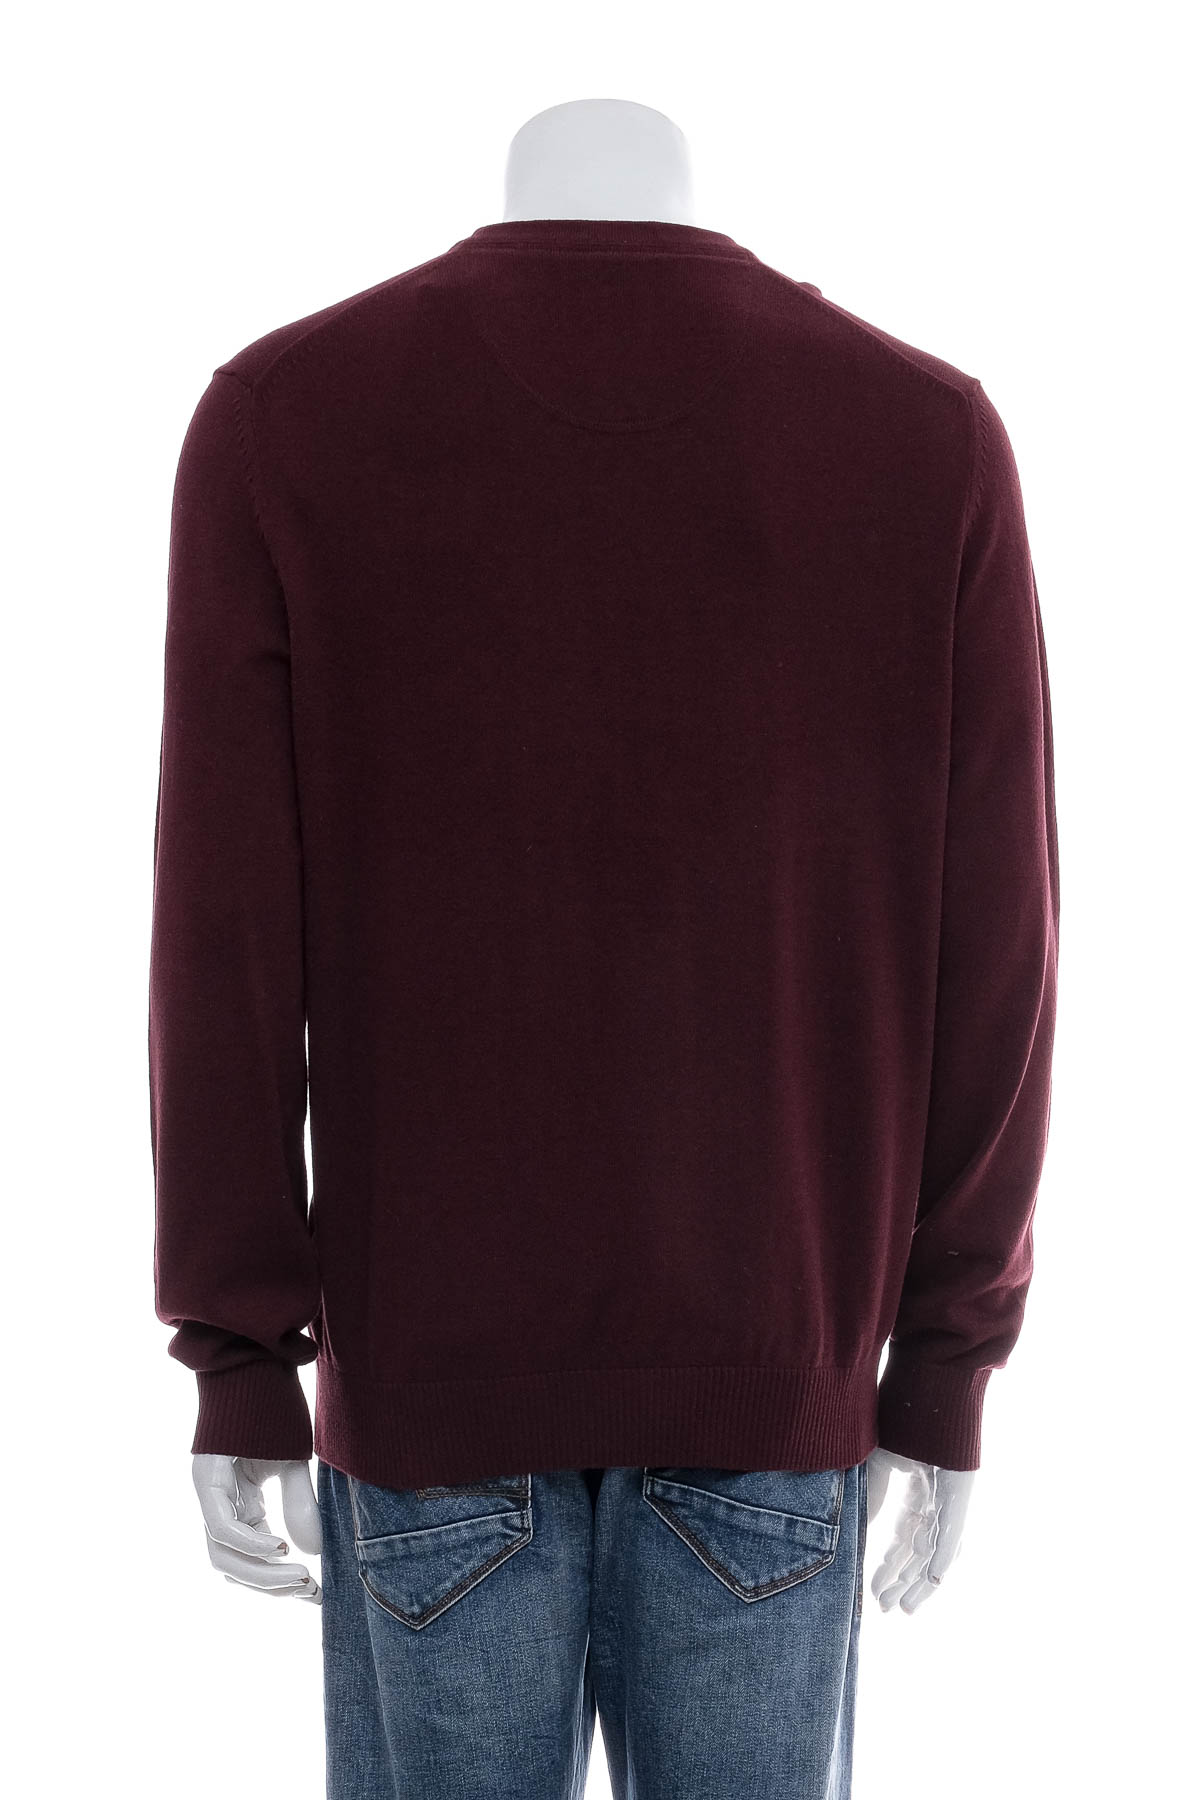 Men's sweater - Lerros - 1